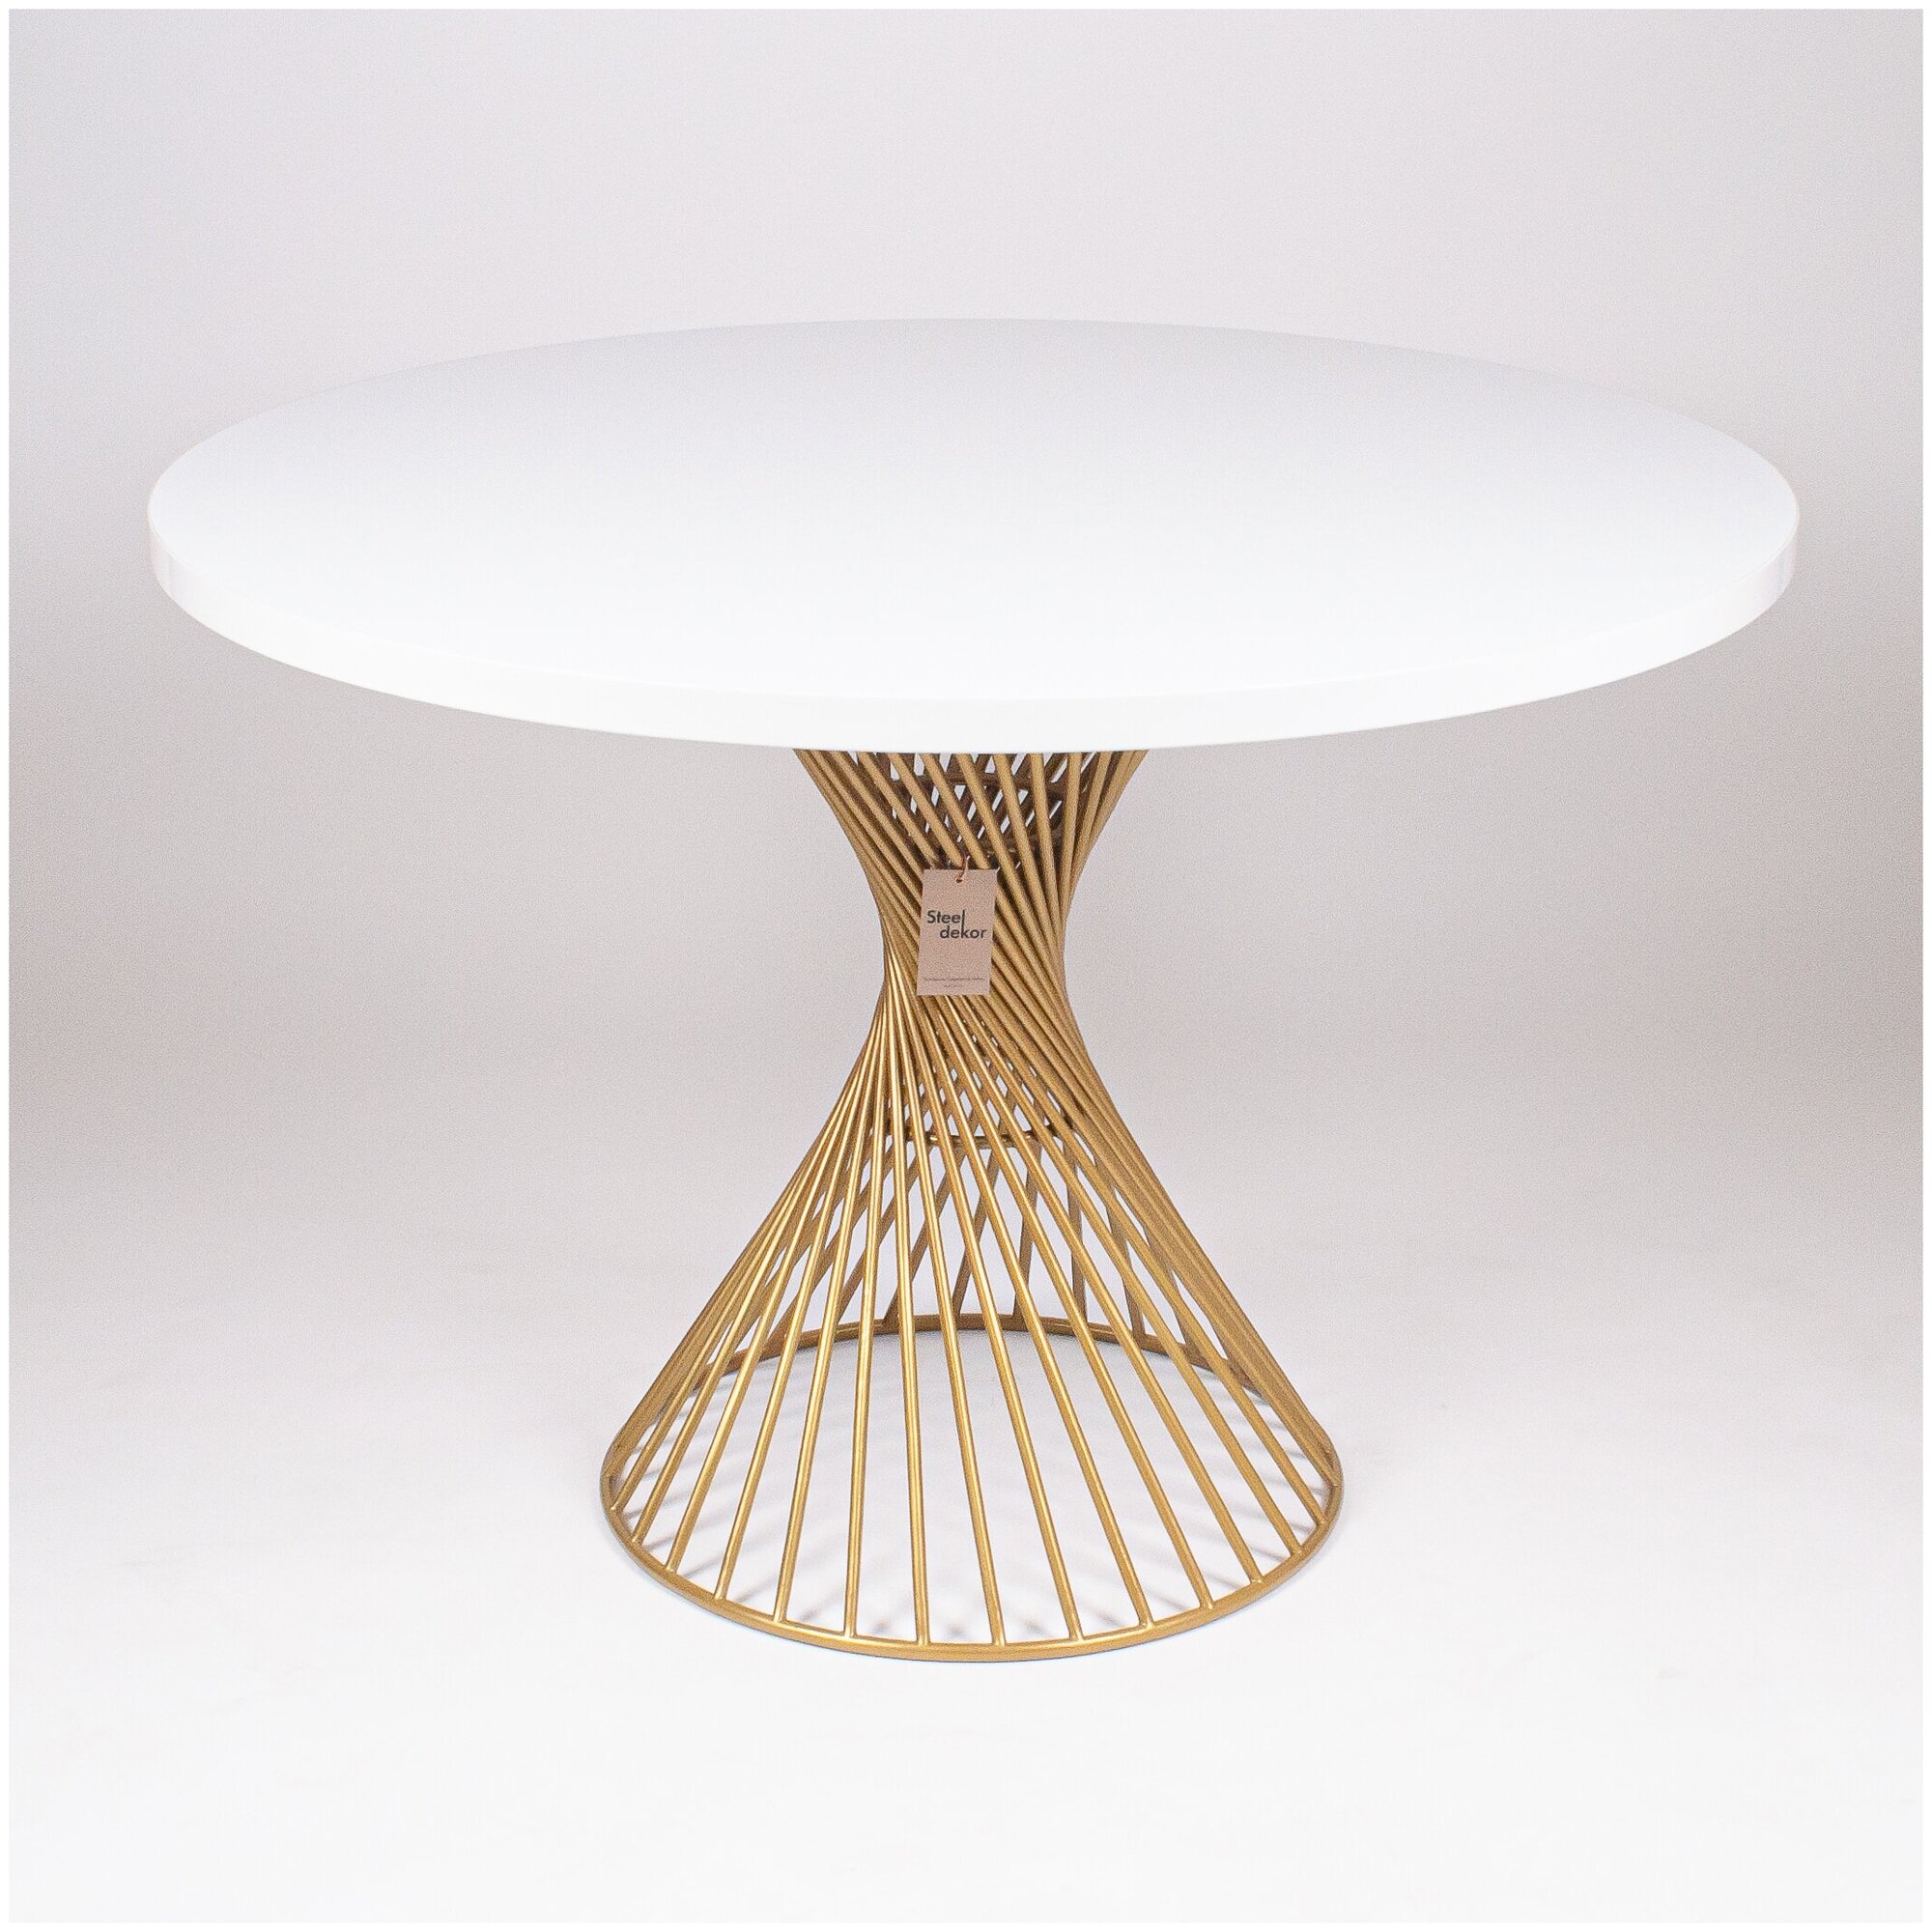 Стол кухонный круглый с белой столешницей, золотой ножкой из прутьев, диаметр столешницы 110 см, от бренда Steel Dekor